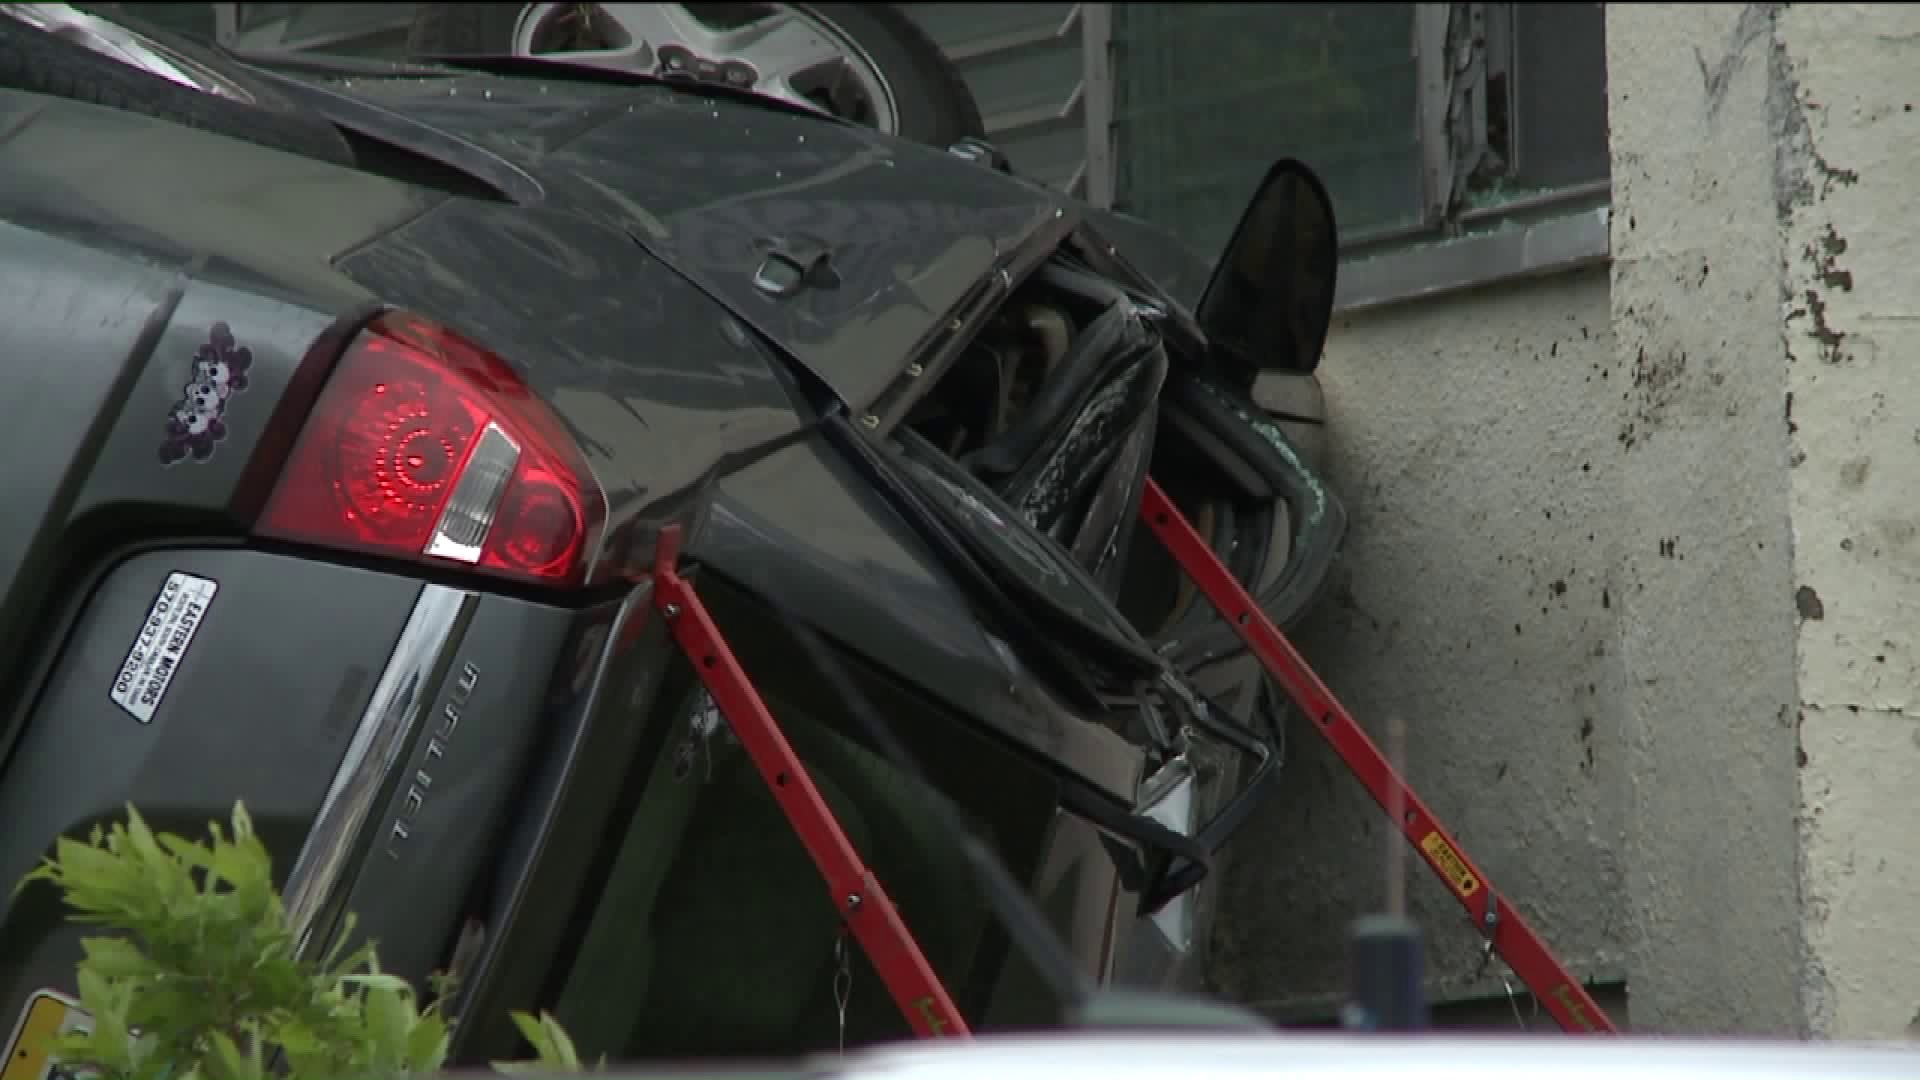 Police Investigating Crash in Scranton